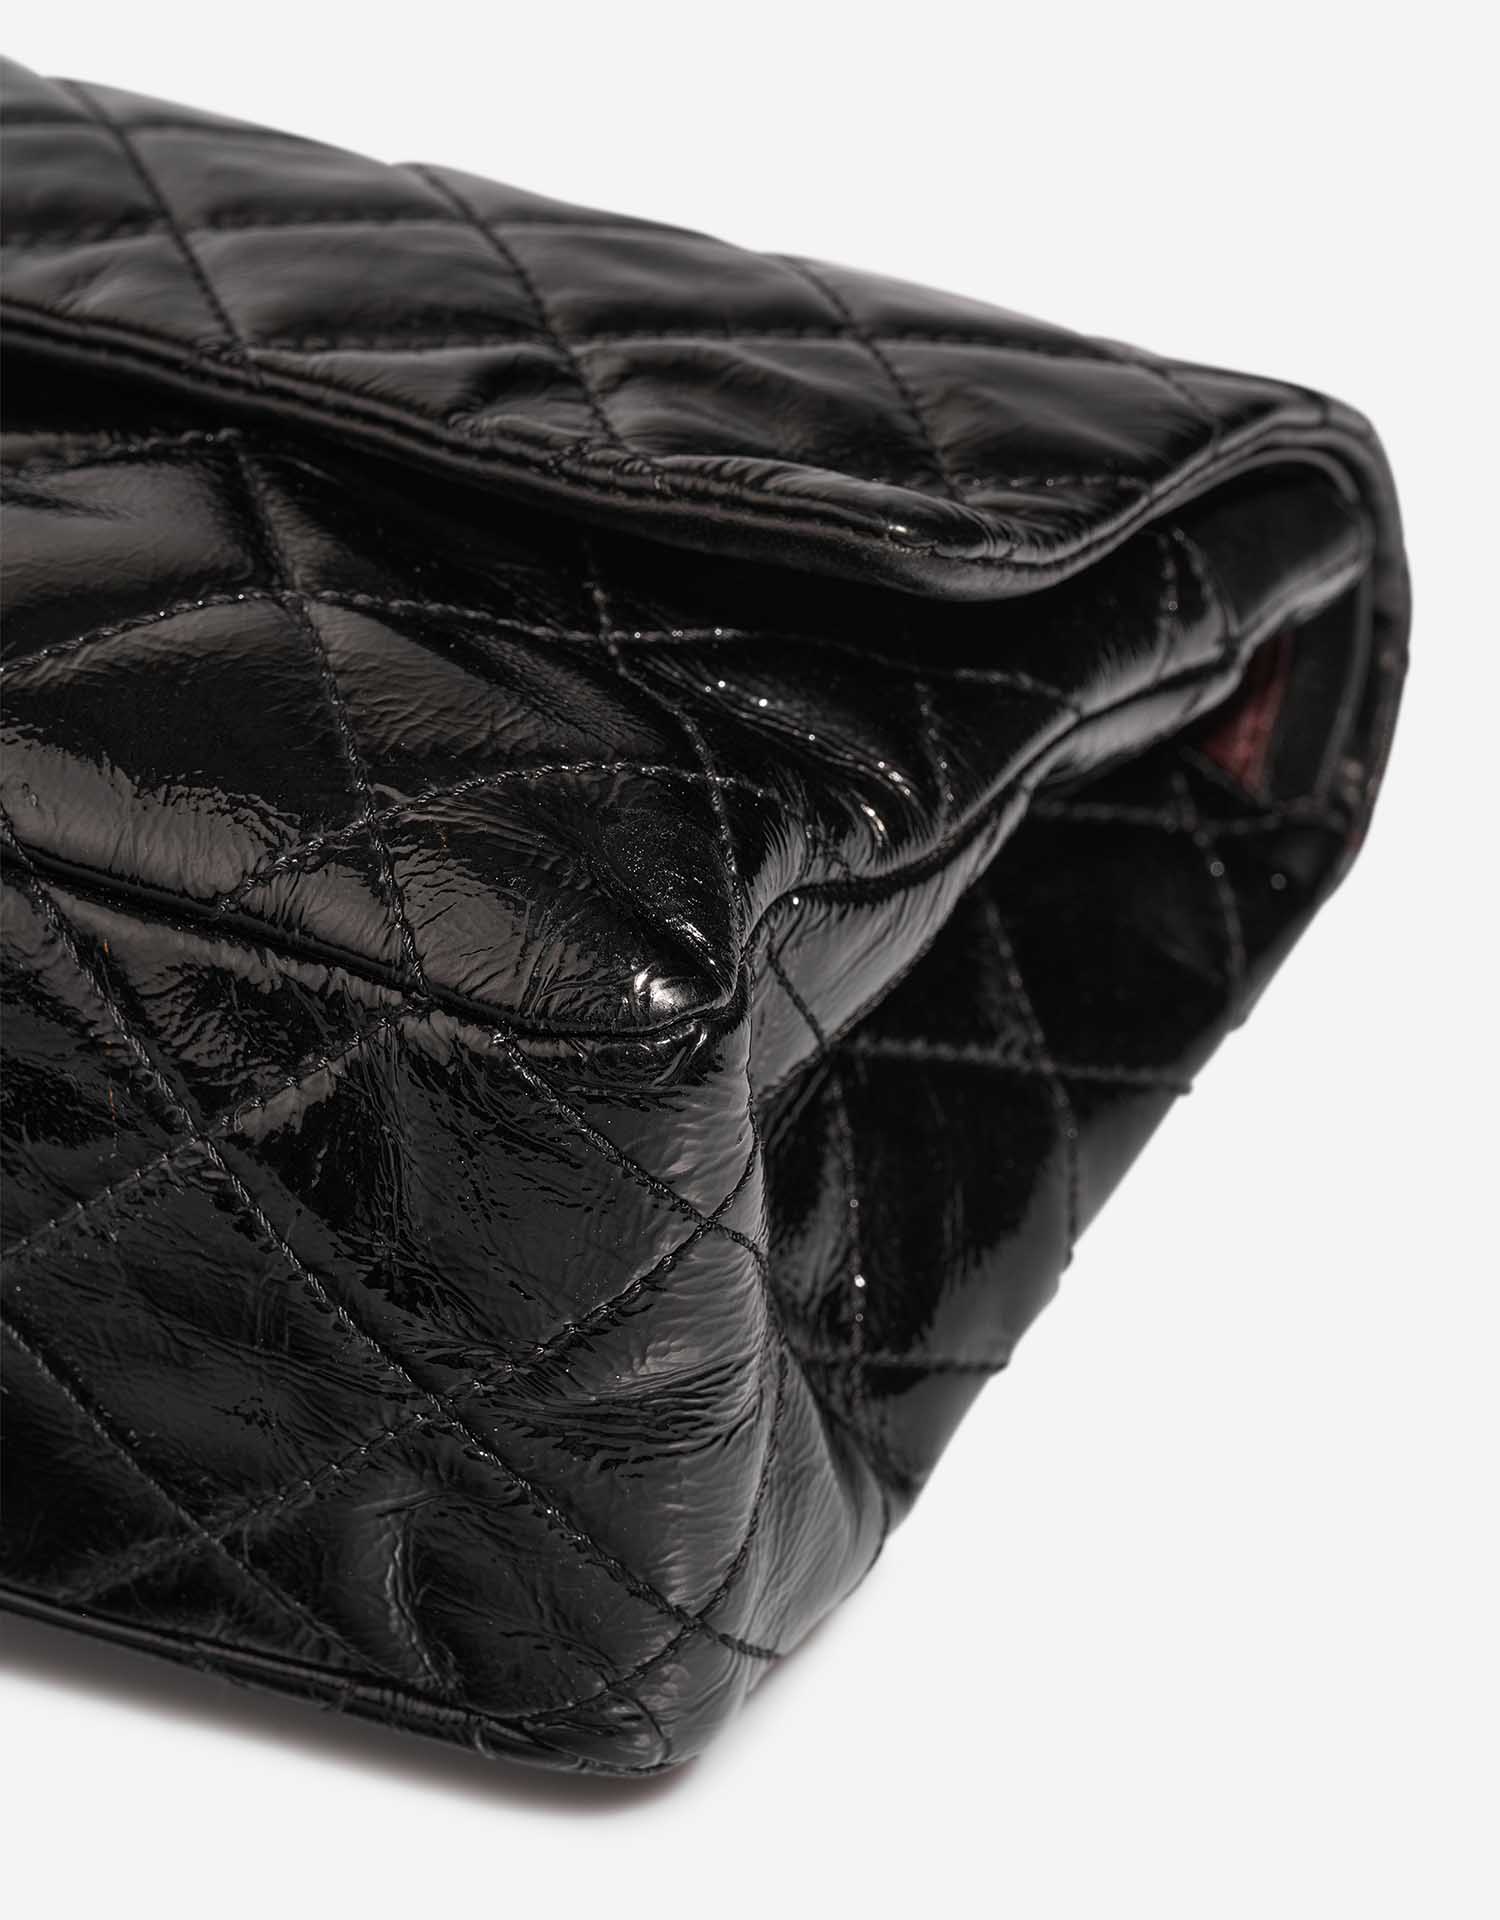 Chanel 255Reissue Black Gebrauchsspuren | Verkaufen Sie Ihre Designer-Tasche auf Saclab.com